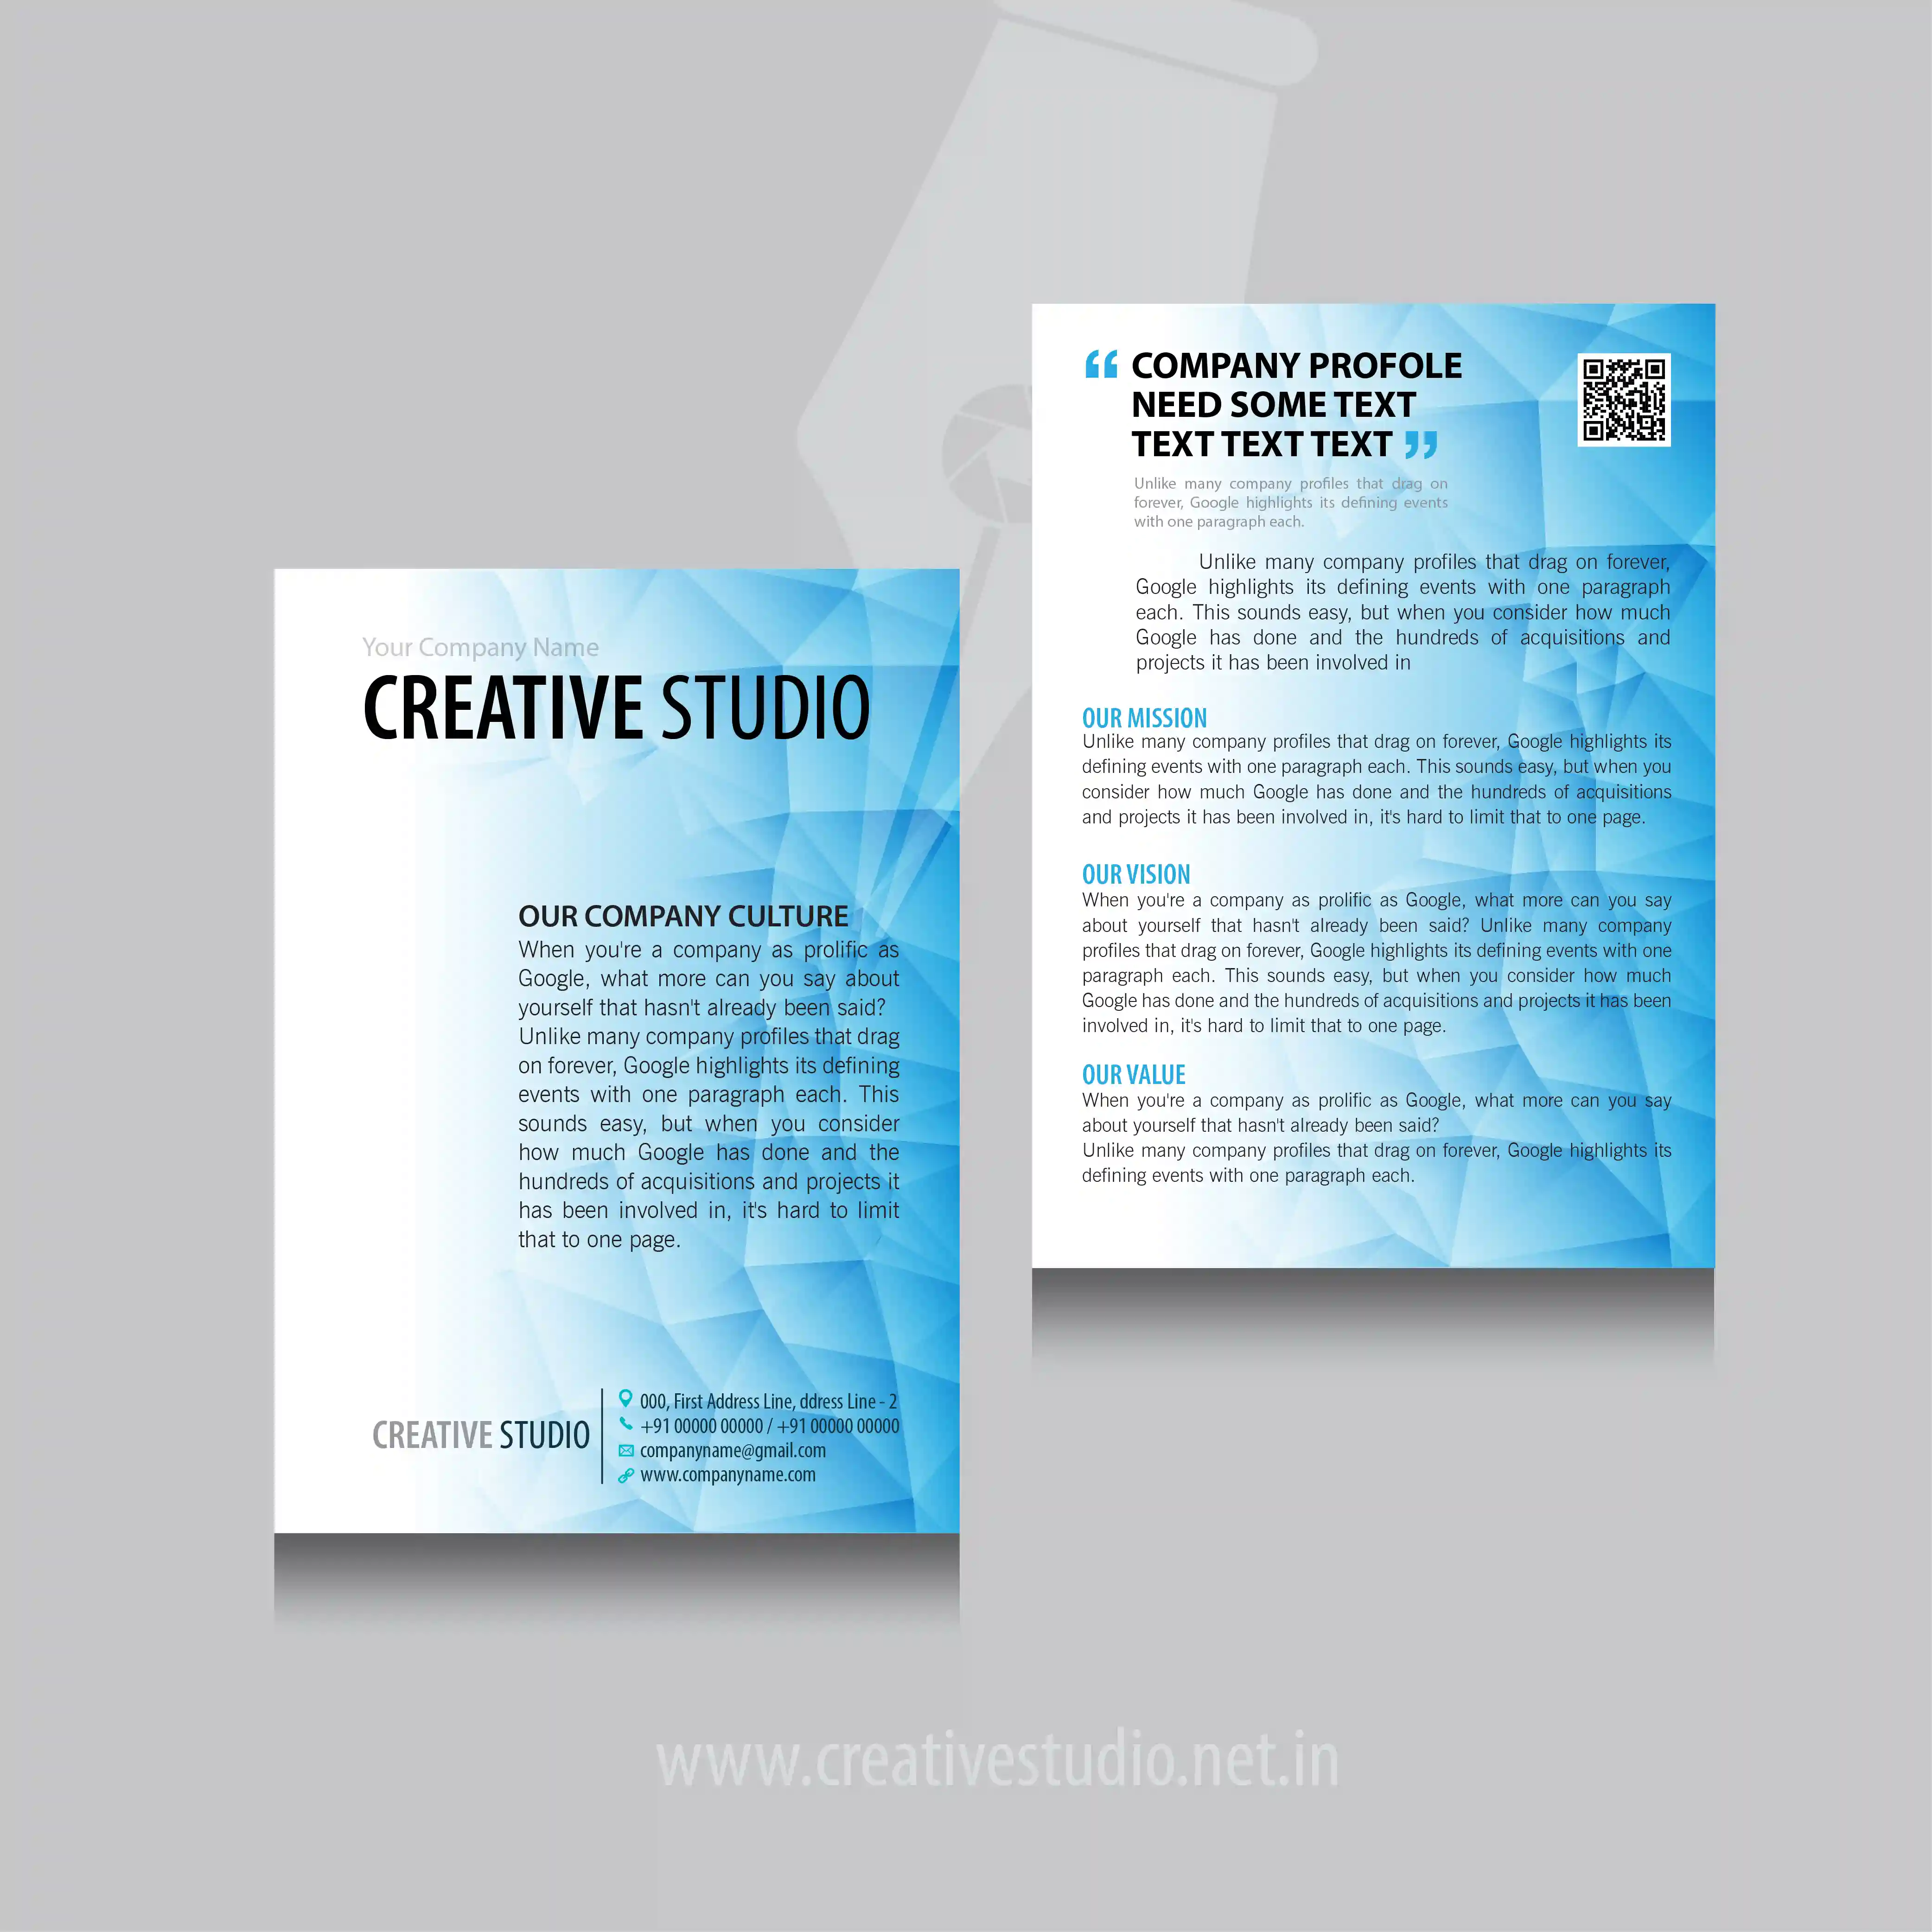 COMPANY PROFILE 04 01 - Company Profile Portfolio by Creative Studio